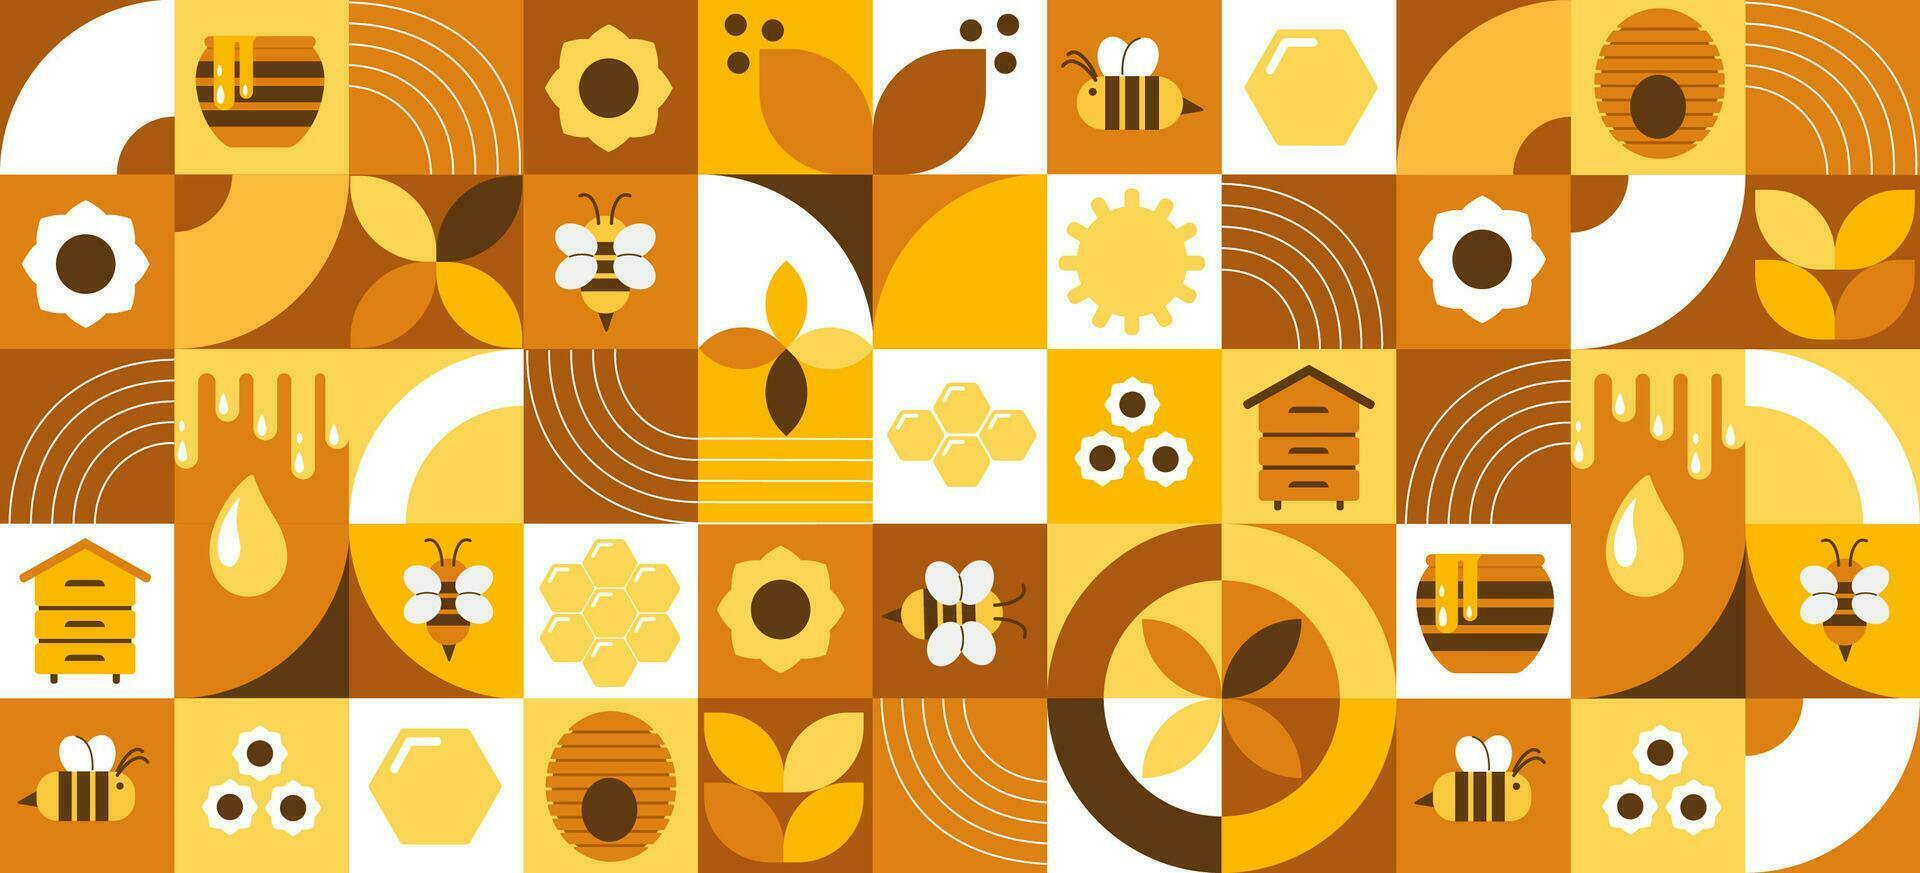 bakgrund med bin, honung, honungskakor, bikupa, blommor. modern abstrakt baner. bauhaus stil stil. vektor illustration av geometrisk former.